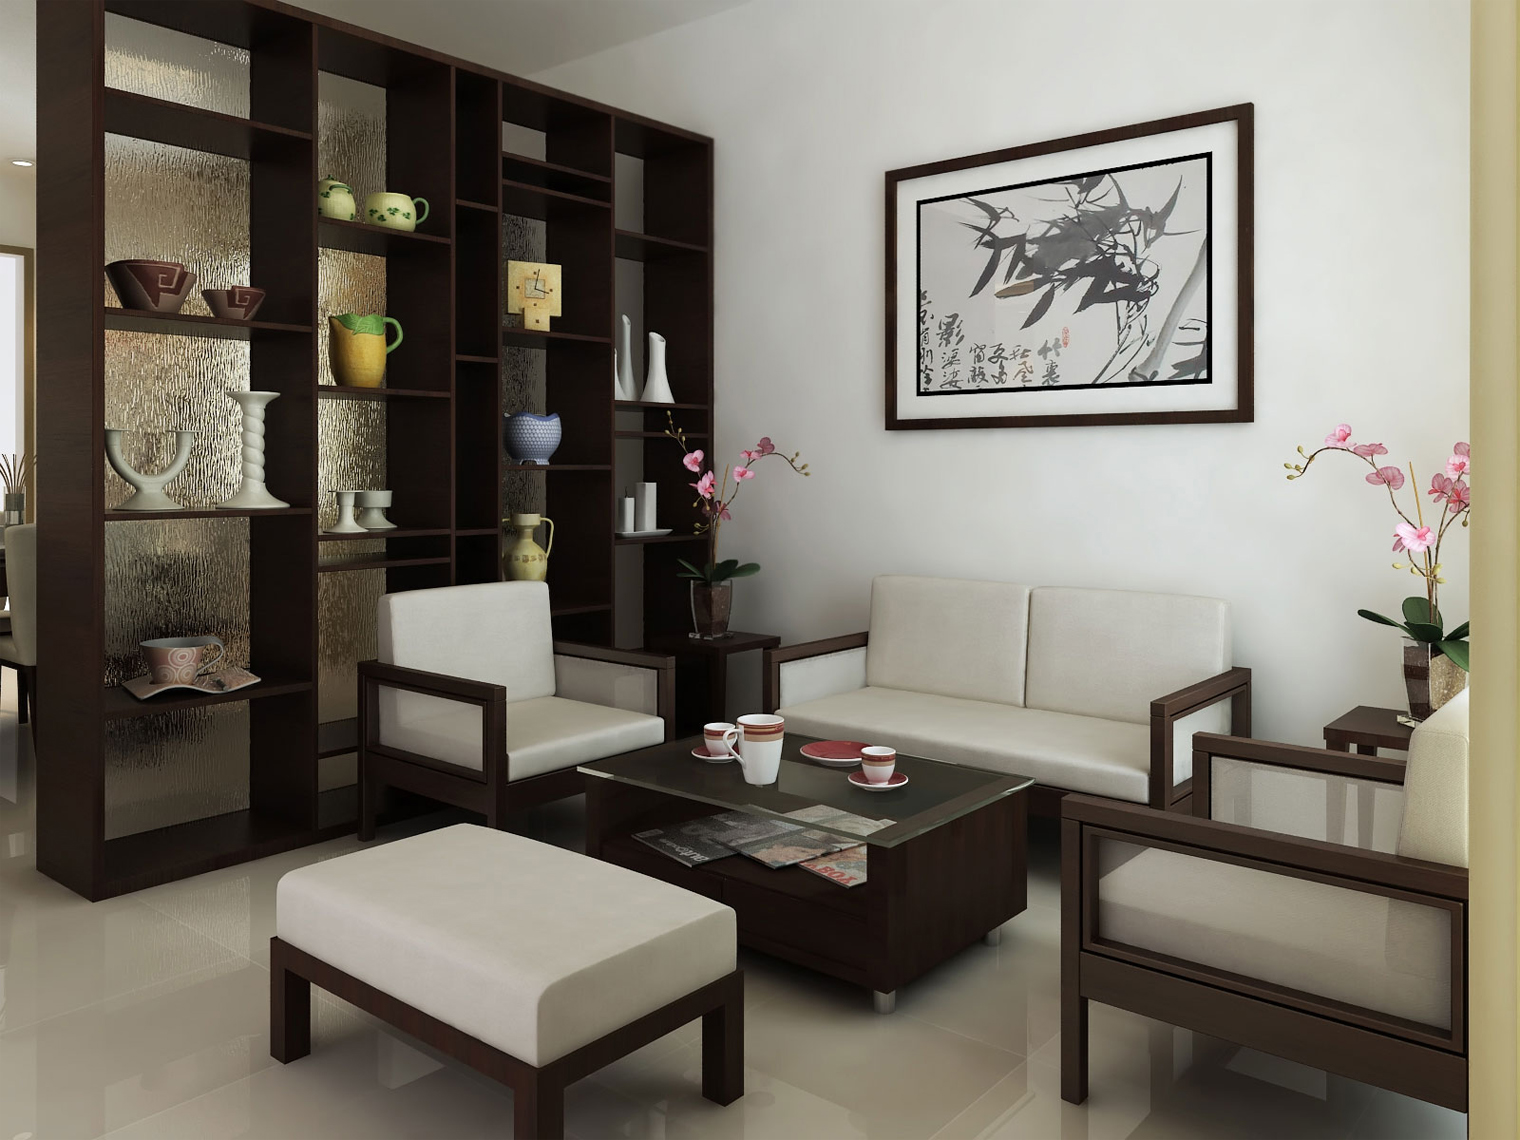 Design interior untuk ruang tamu minimalis kecil | miva-rate